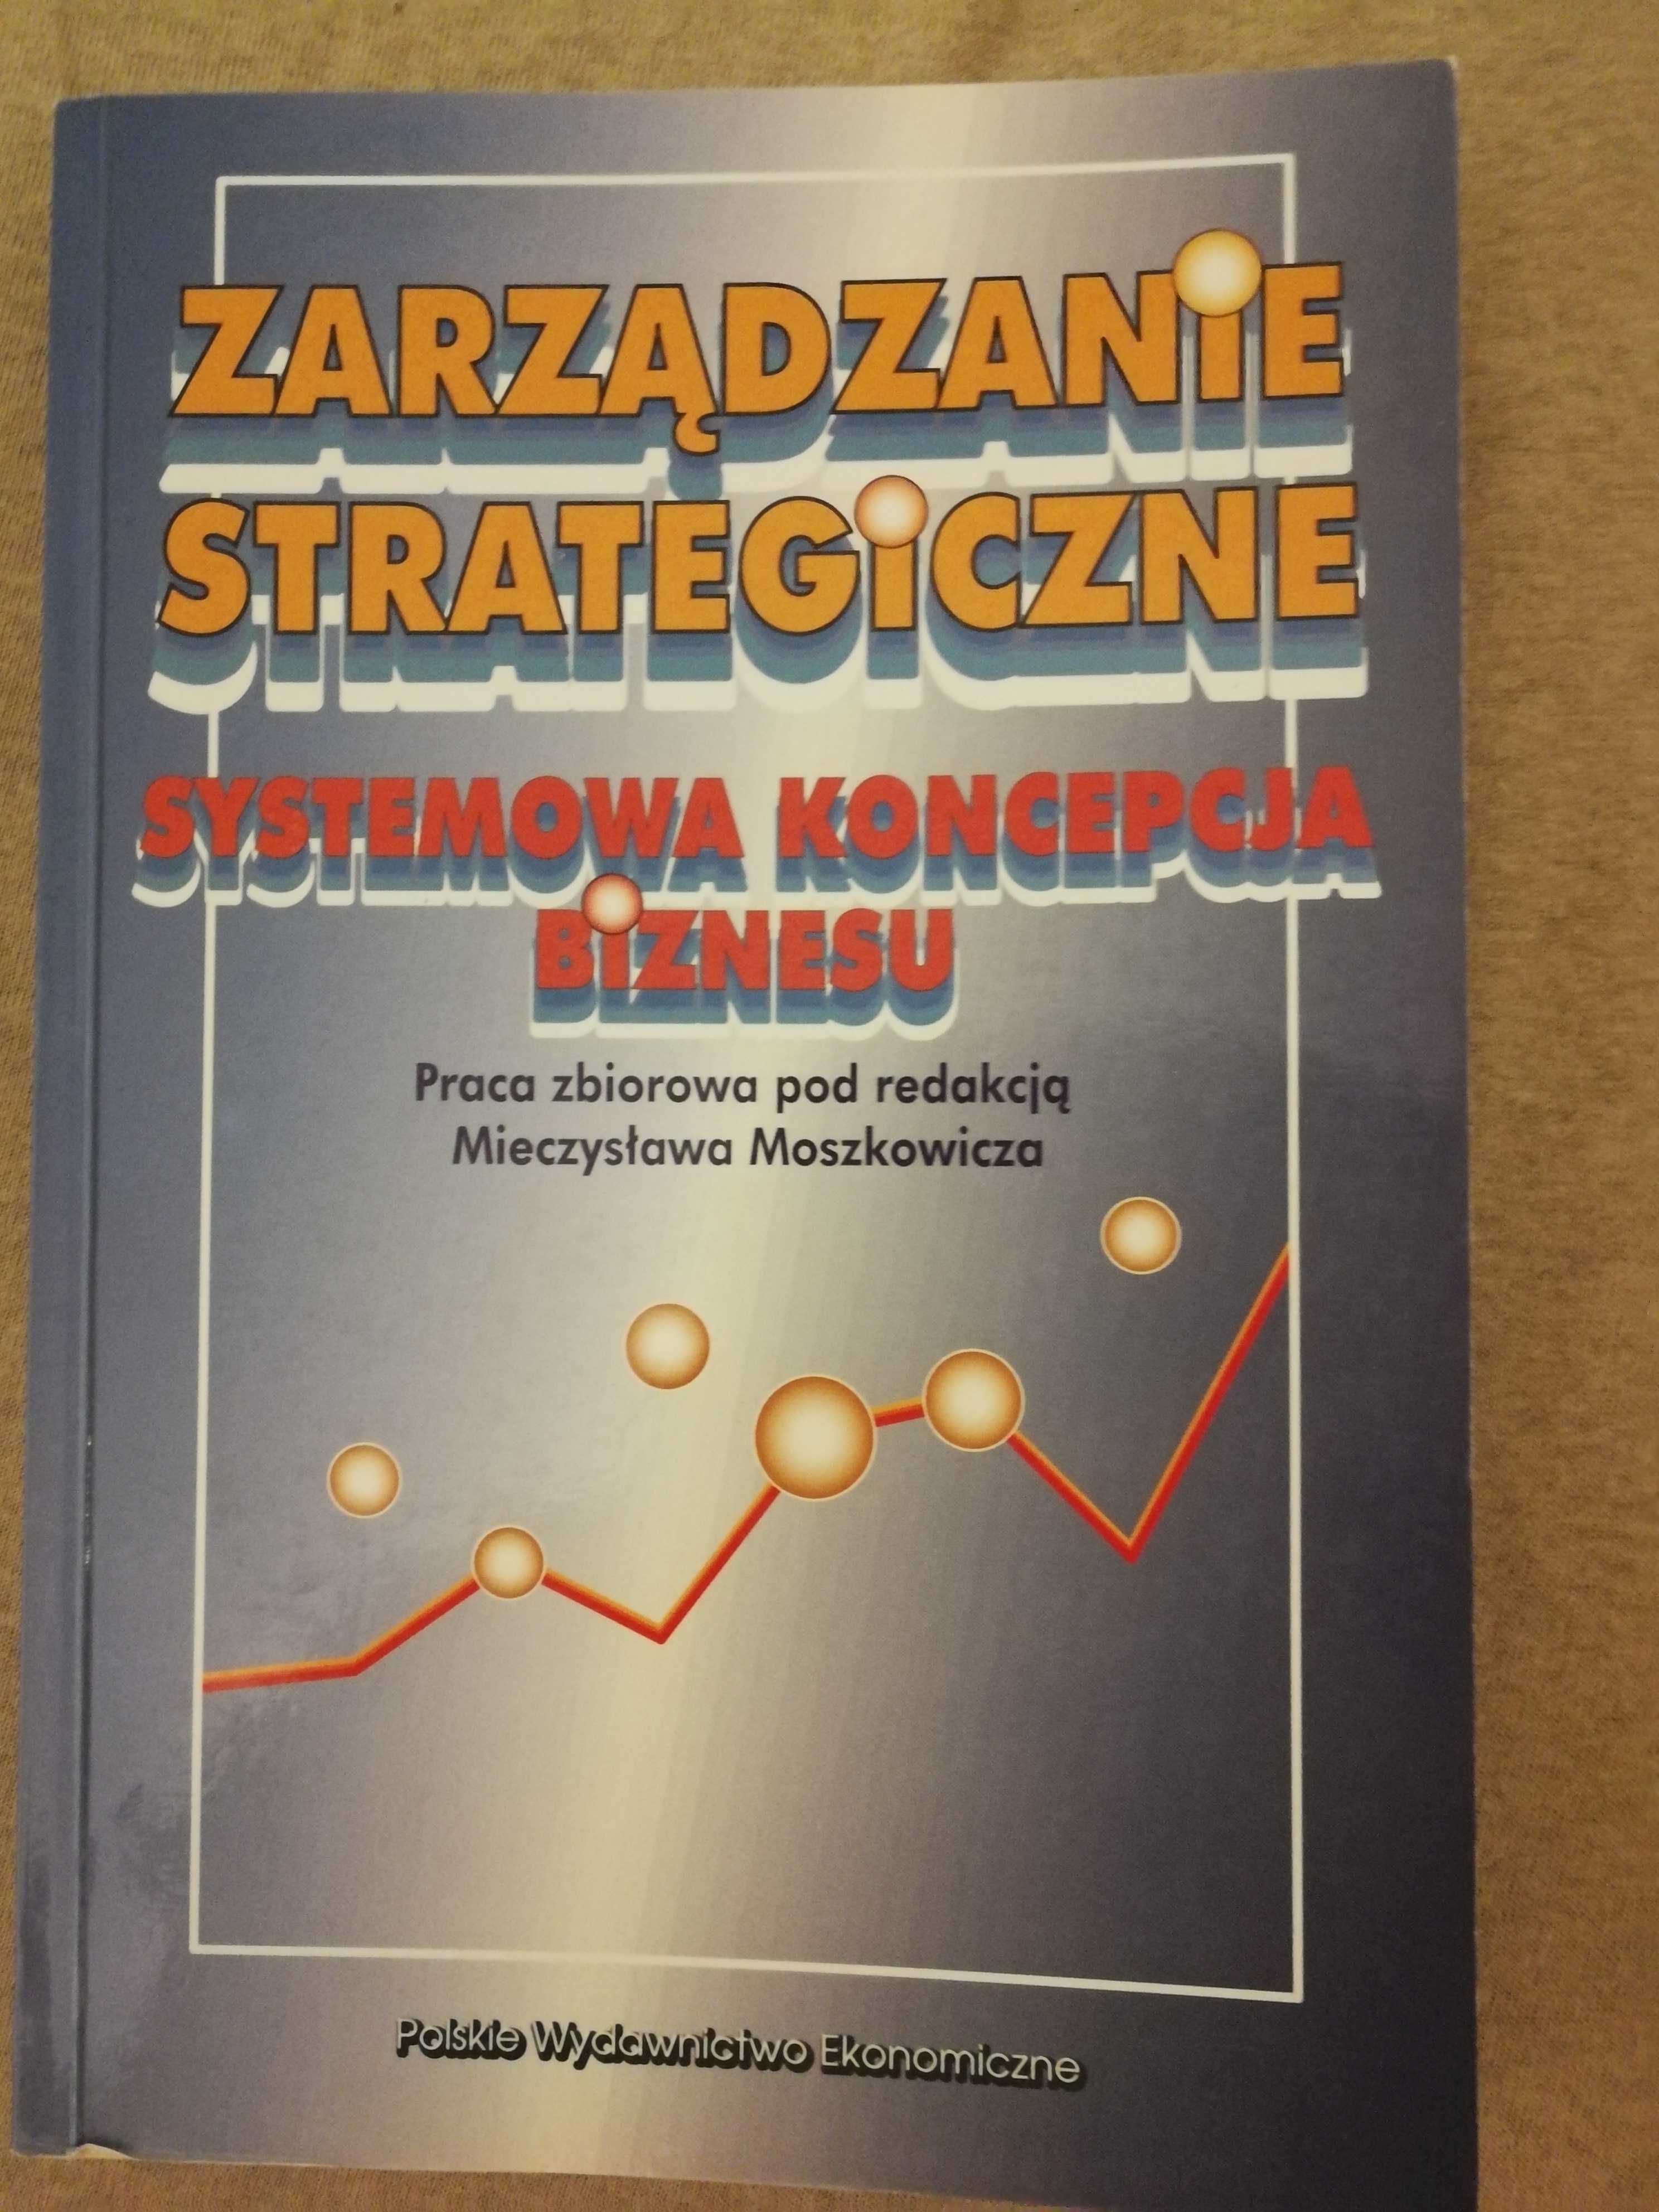 M. Moszkowicz, "Zarządzaniestrategiczne. Systemowa koncepcja biznesu"